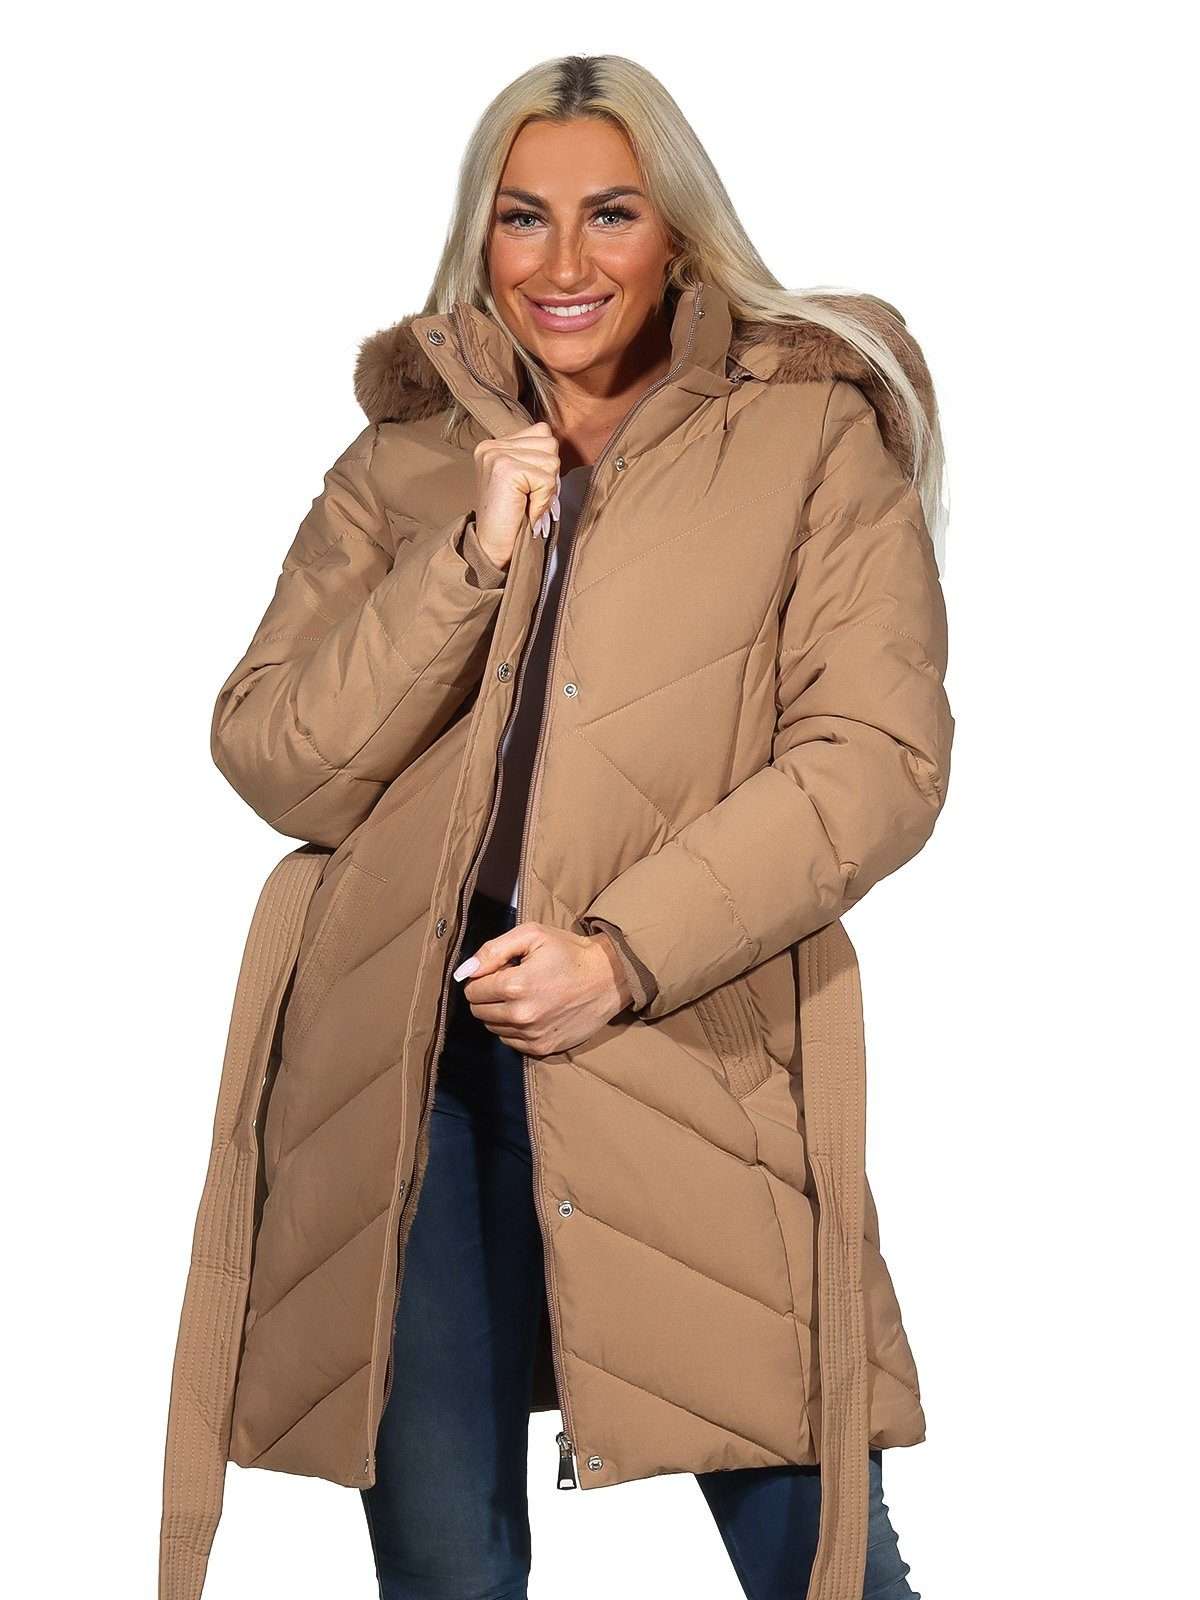 Полупальто стеганое женское пальто диагонально стеганое со съемным завязывающимся поясом